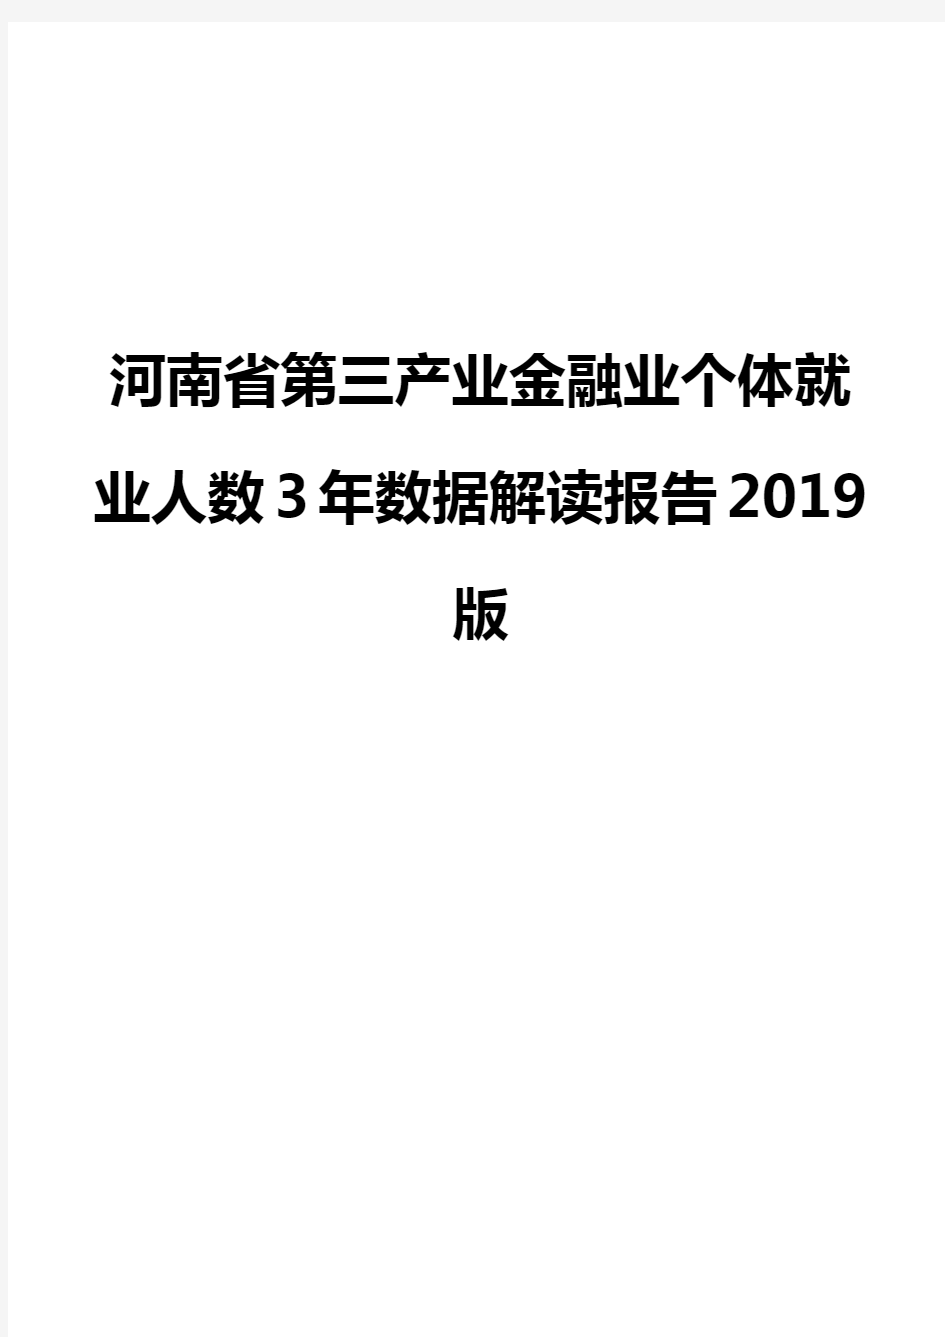 河南省第三产业金融业个体就业人数3年数据解读报告2019版